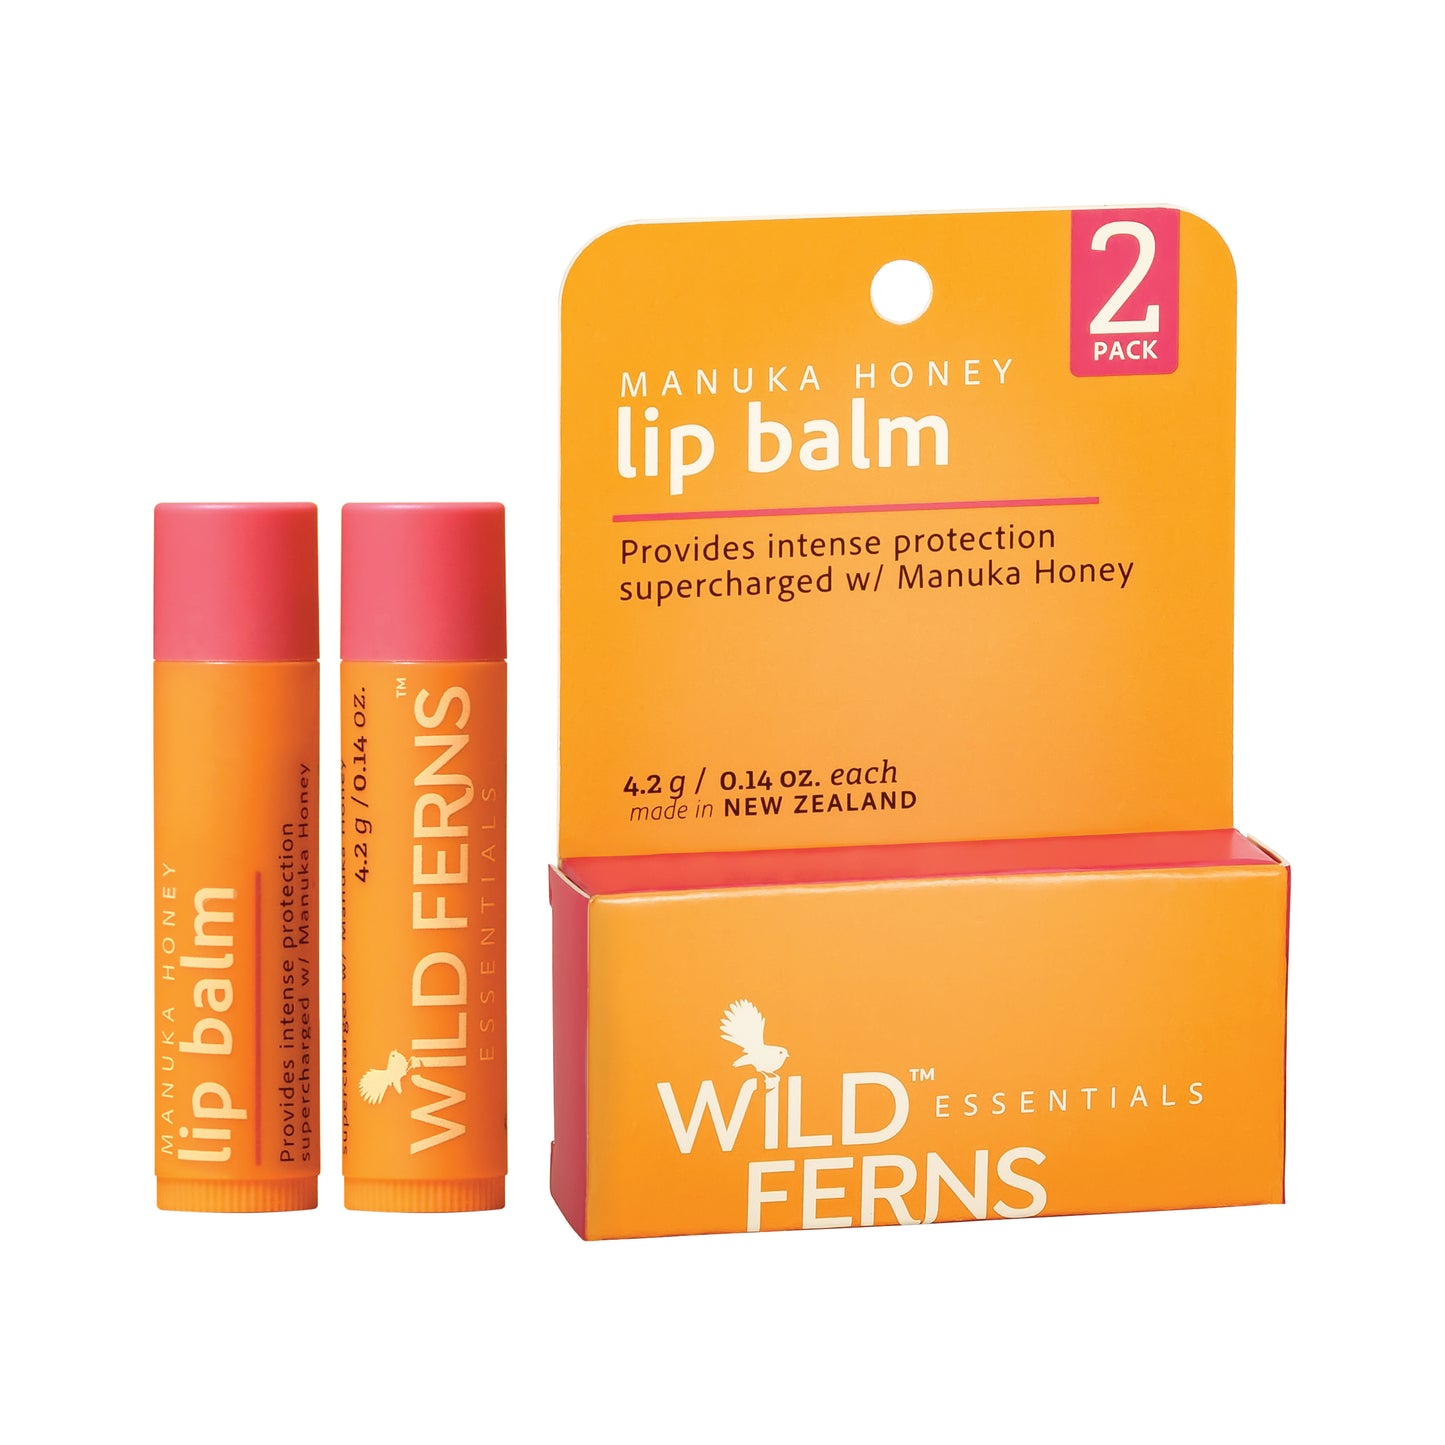 WEMLB - Wild Ferns Essentials Manuka Honey Lip Balm